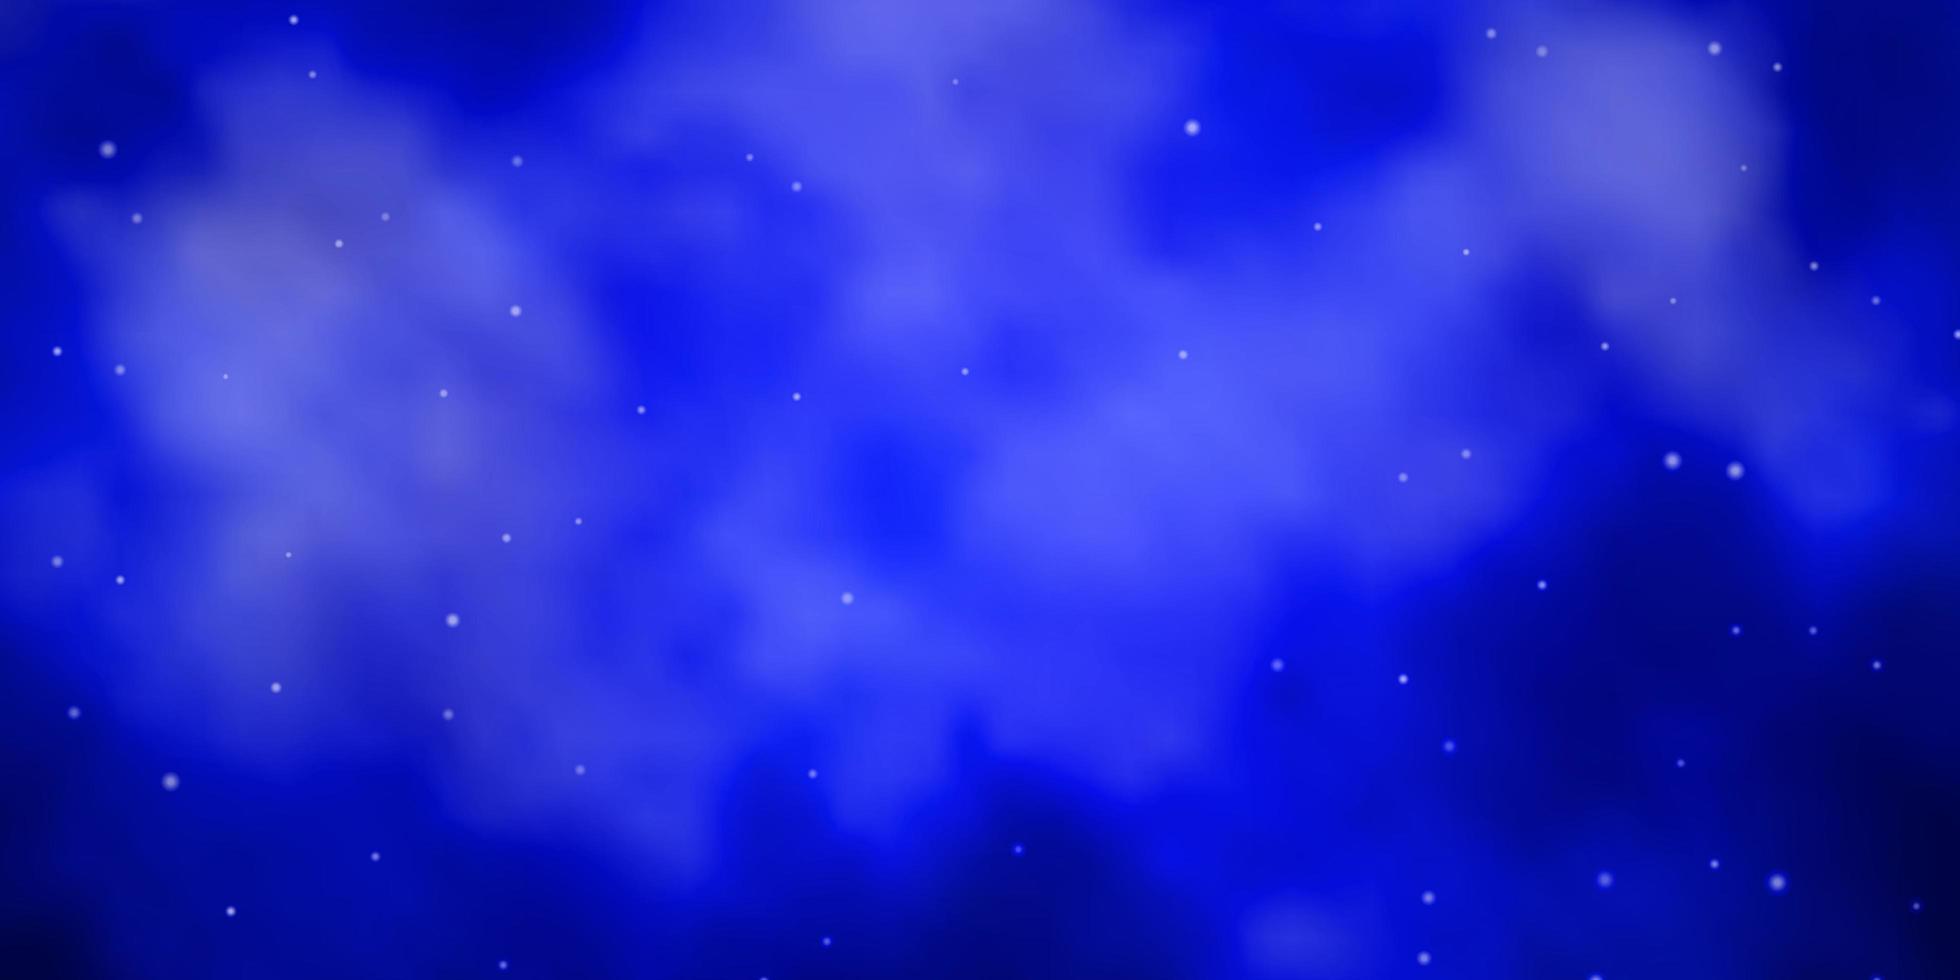 padrão de vetor azul escuro com estrelas abstratas ilustração abstrata geométrica moderna com estrelas melhor design para seu banner de cartaz de anúncio